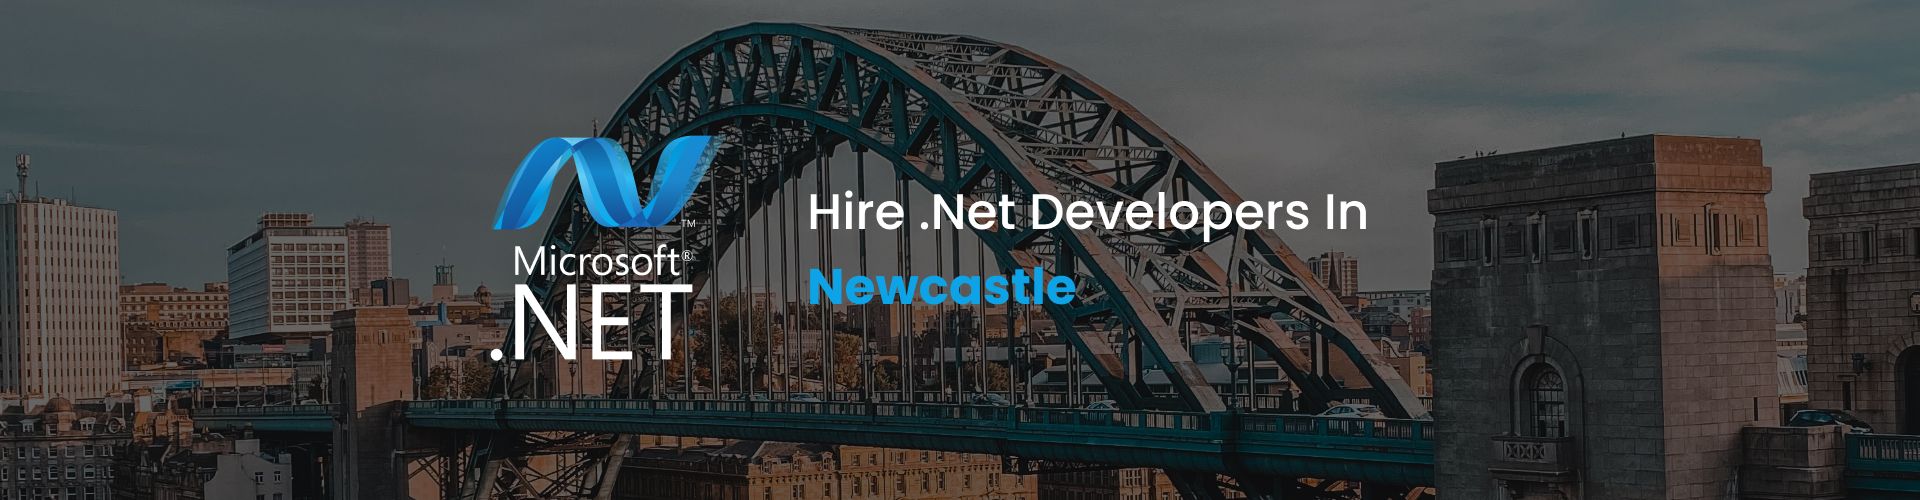 hire dot net developers in newcastle